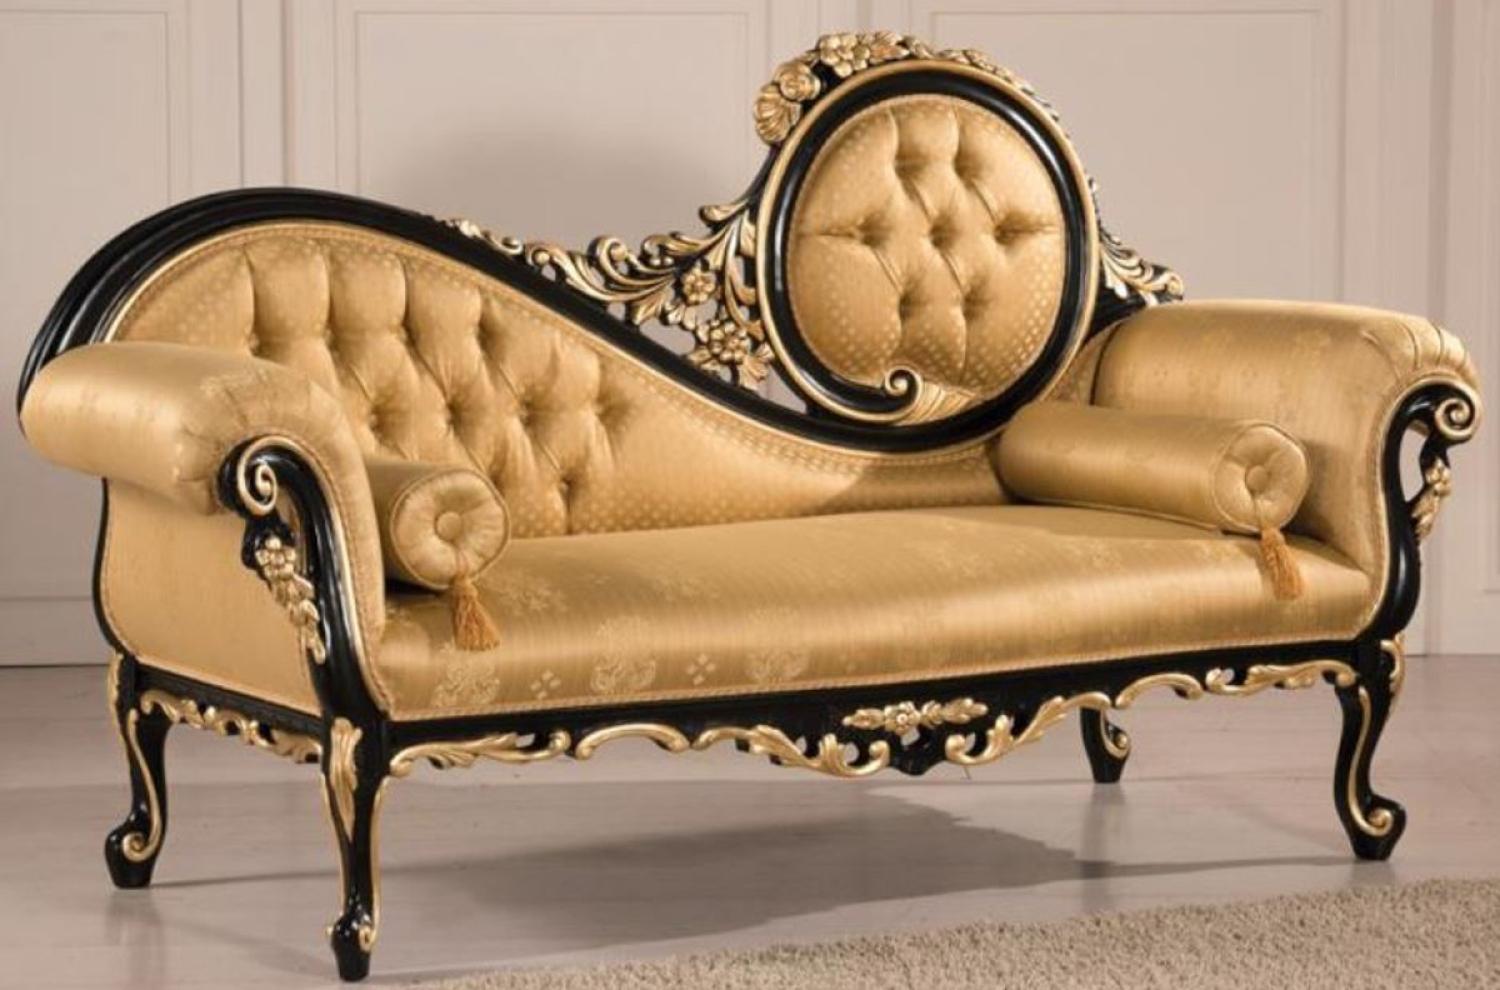 Casa Padrino Luxus Barock Wohnzimmer Sofa Gold / Schwarz 170 x 70 x H. 100 cm - Barockstil Wohnzimmer Möbel - Edel & Prunkvoll Bild 1